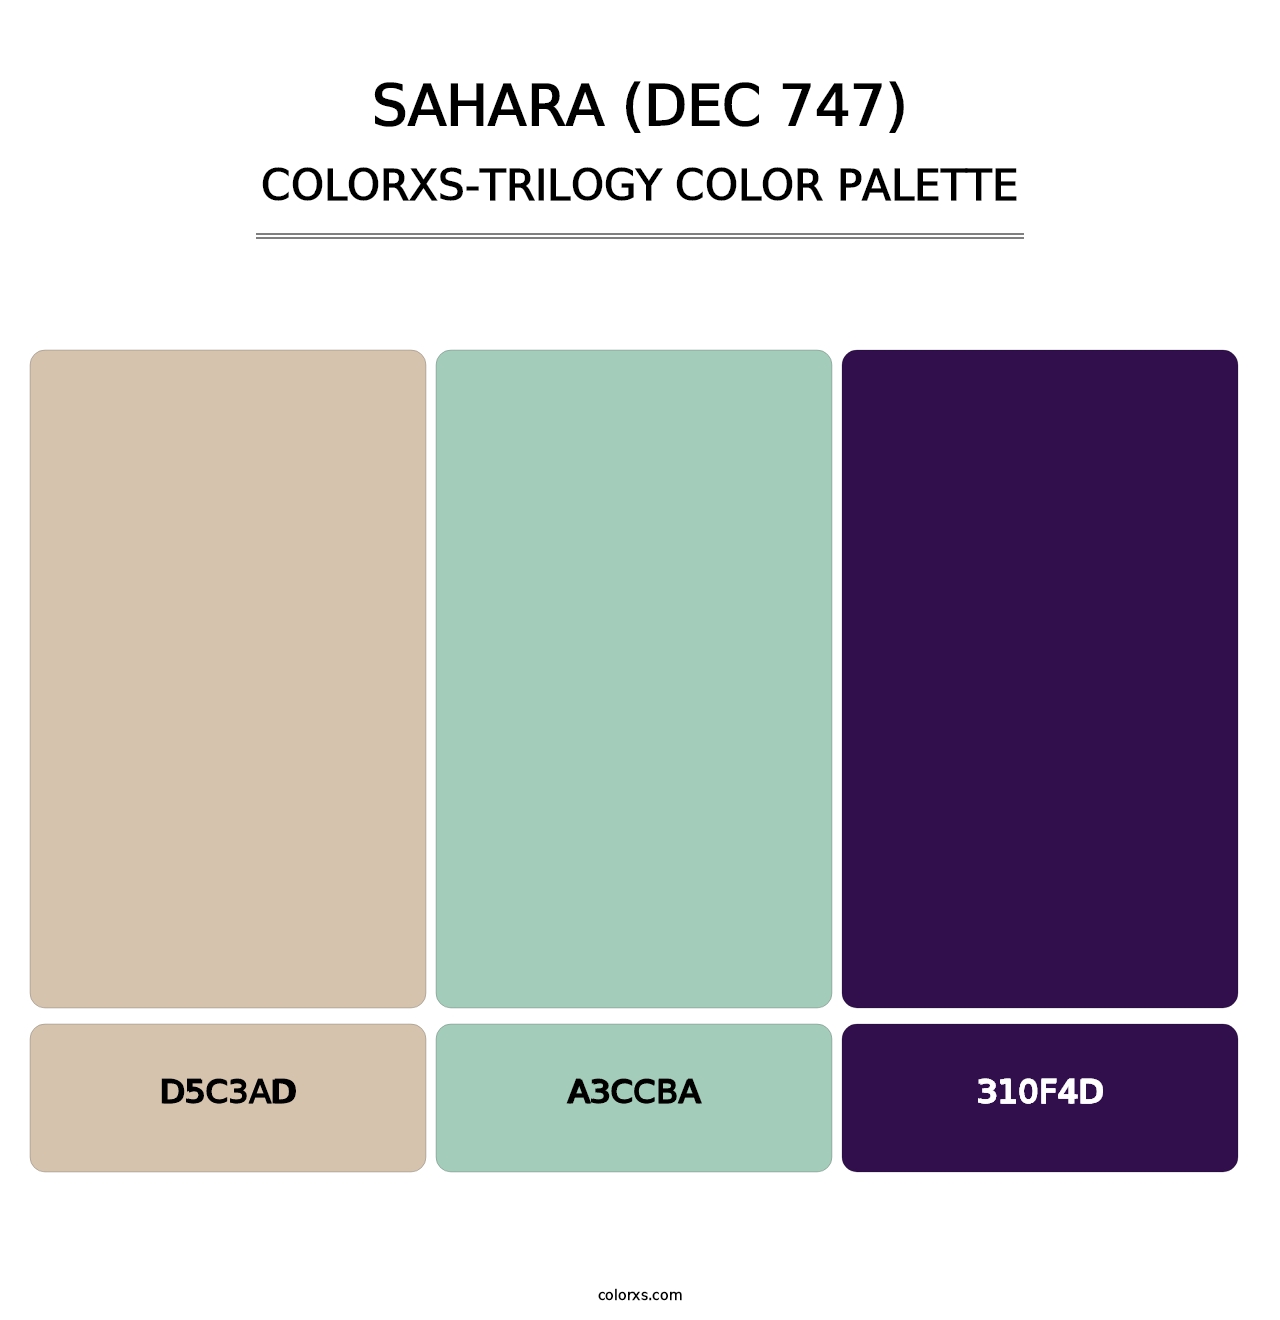 Sahara (DEC 747) - Colorxs Trilogy Palette